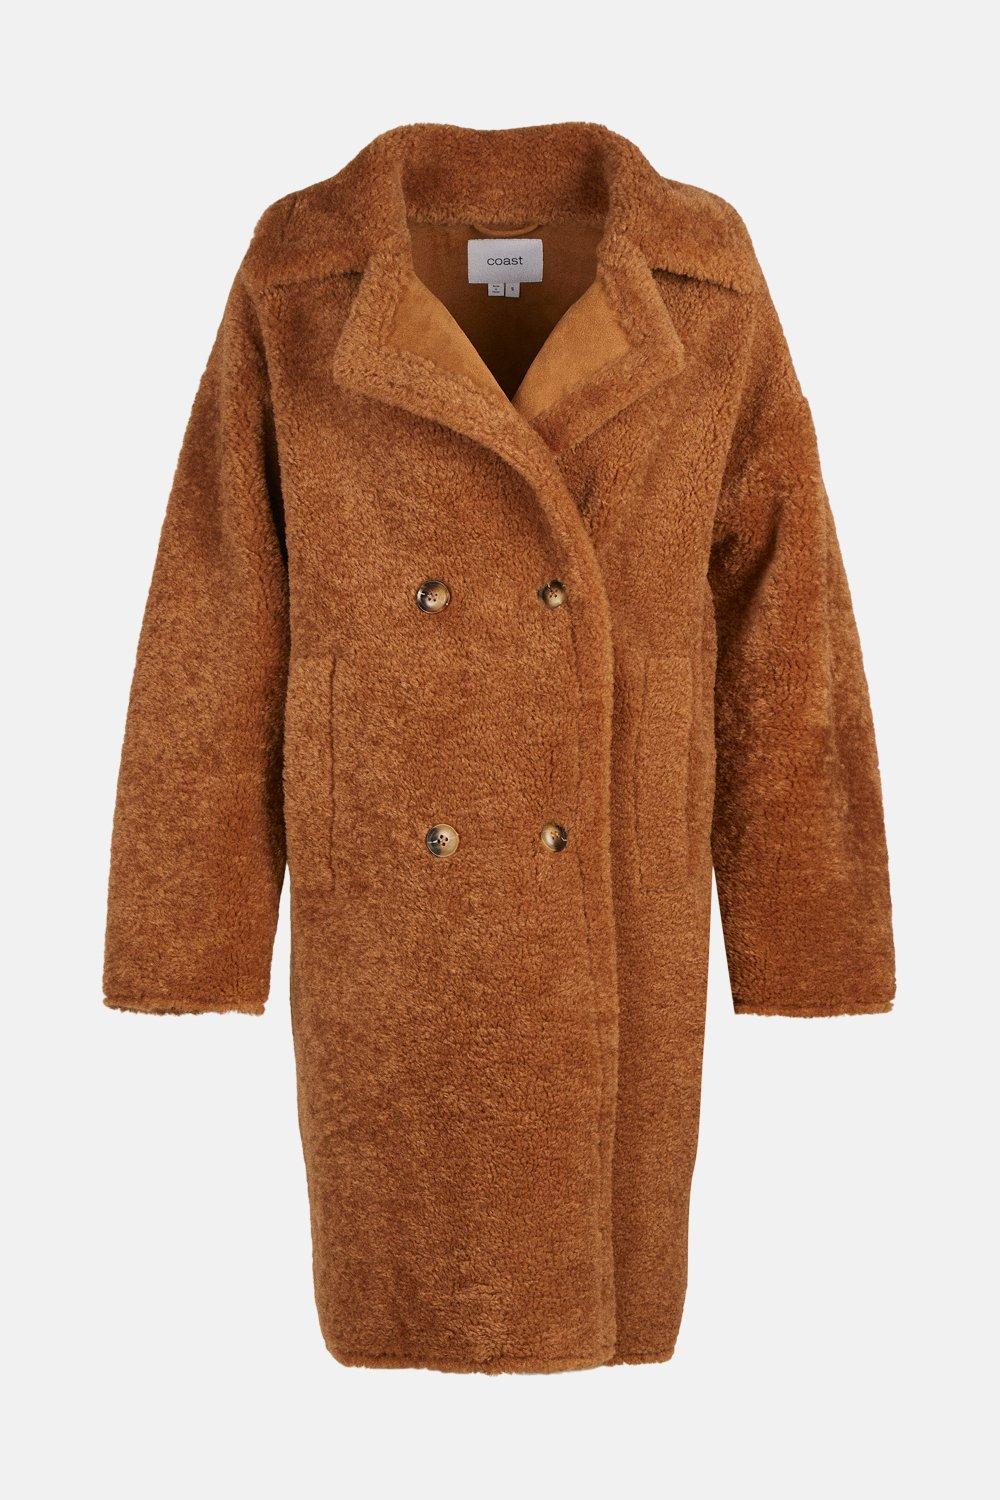 Jackets & Coats | Longline Borg Teddy Coat | Coast